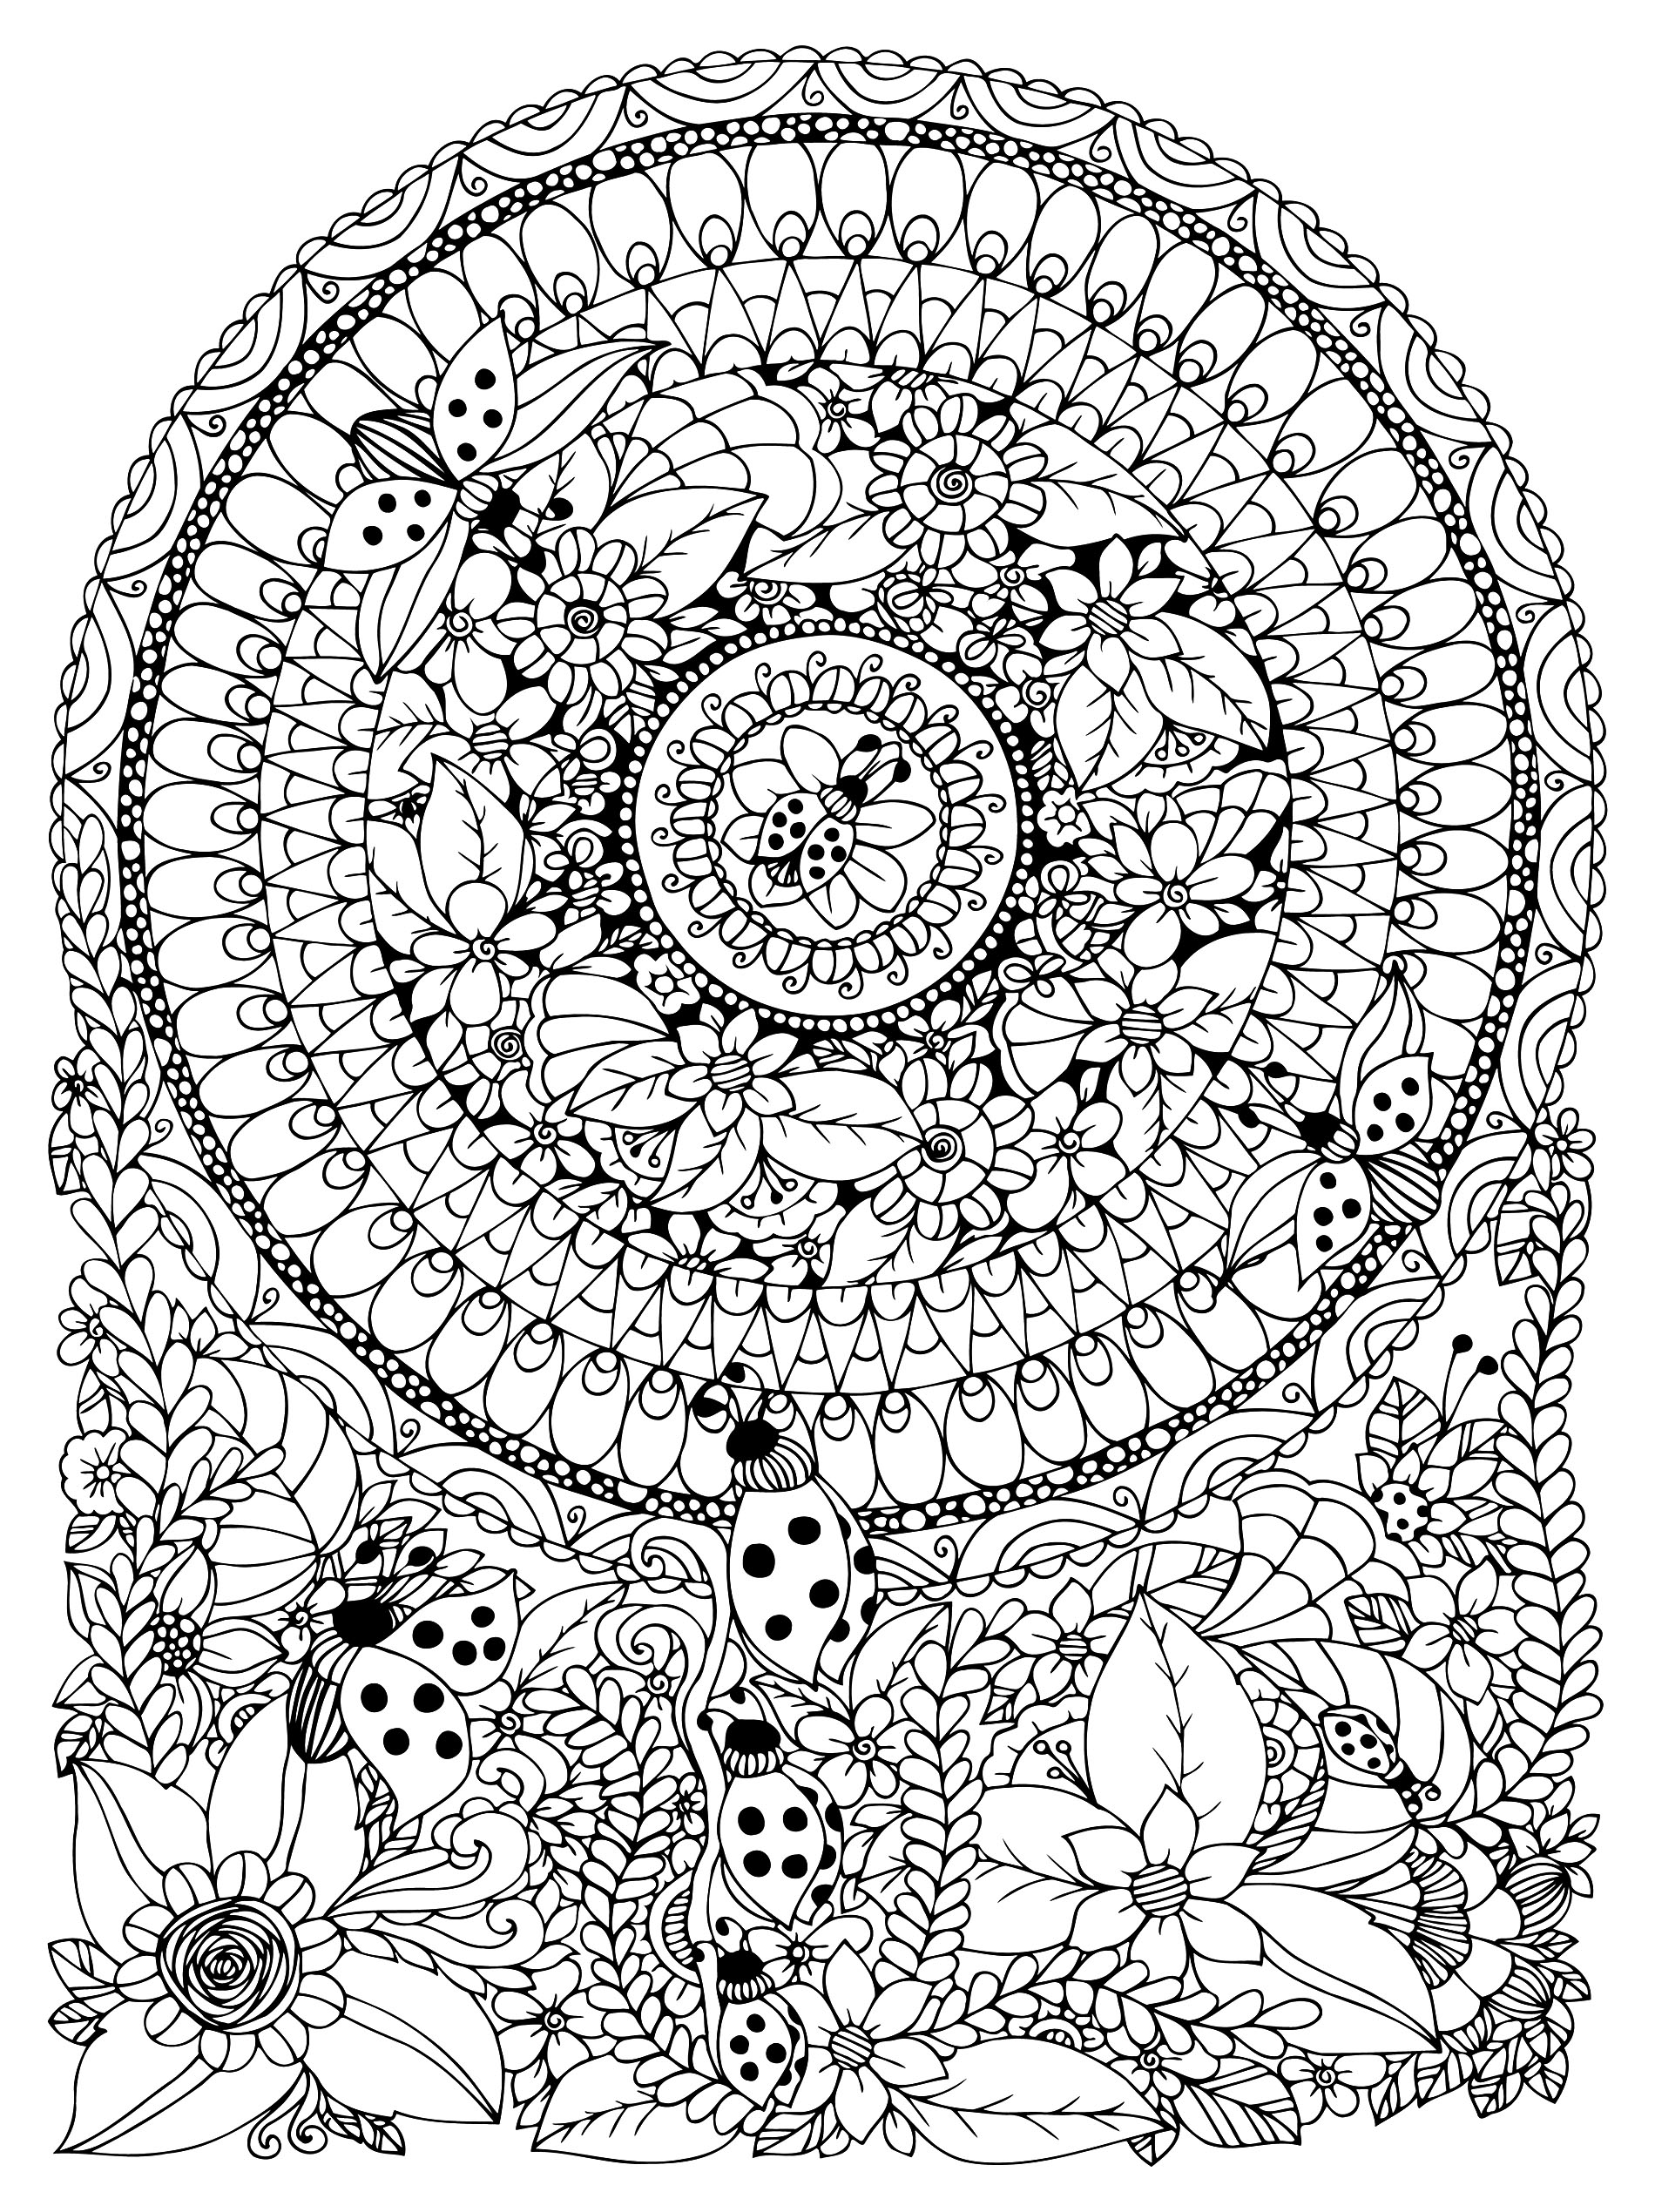 Mandala avec fleurs et coccinelles - Mandalas - Coloriages difficiles pour adultes